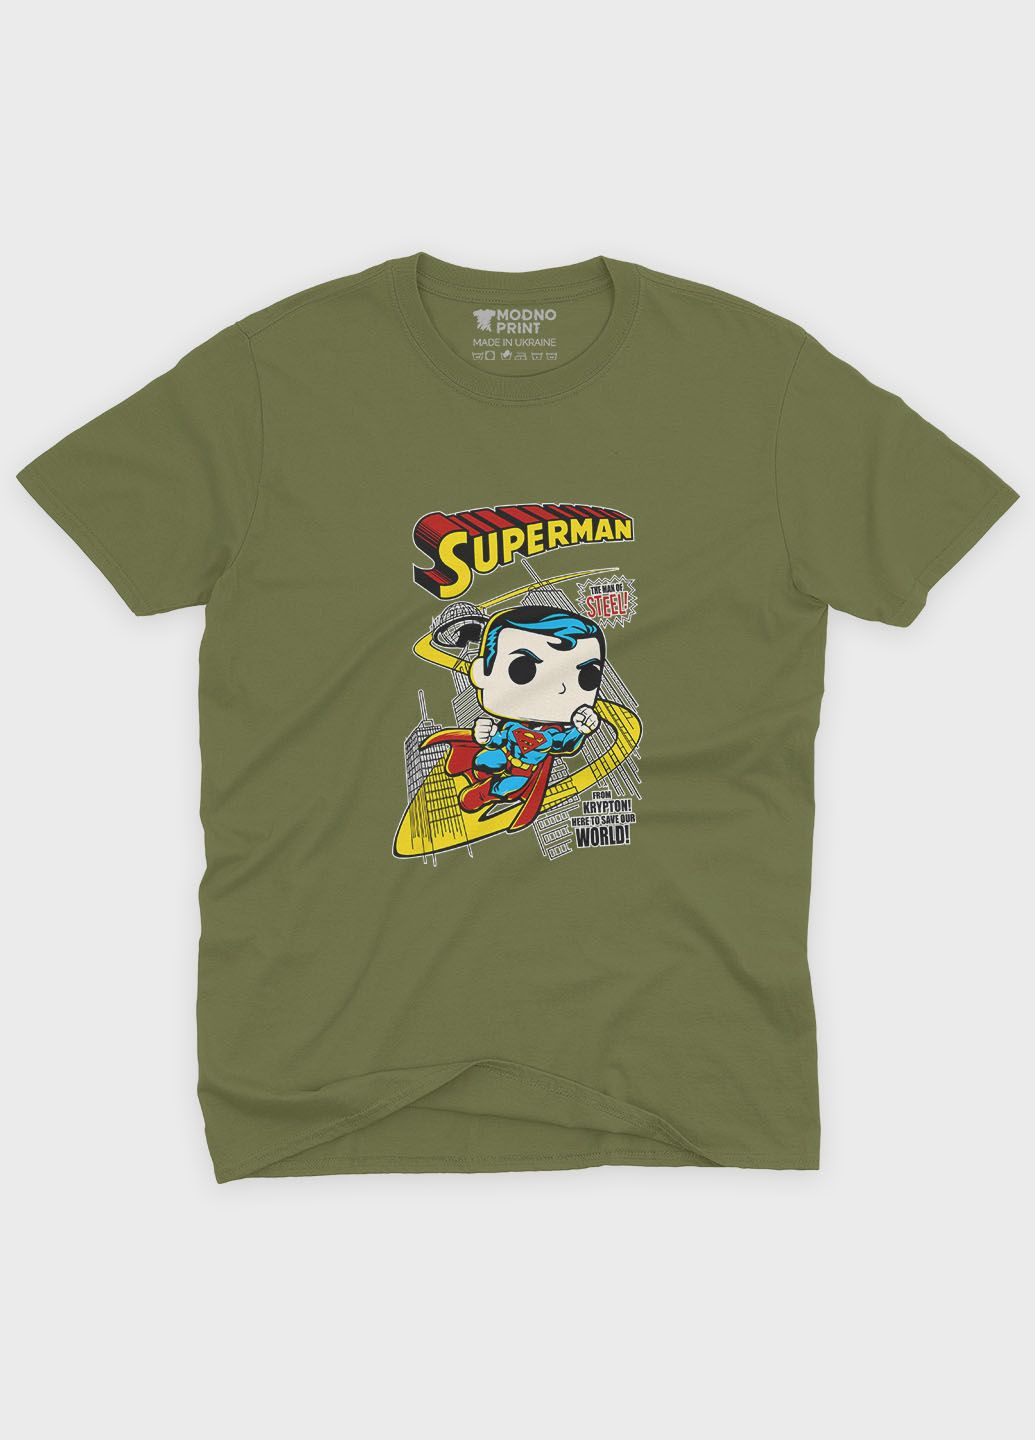 Хаки (оливковая) мужская футболка с принтом супергероя - супермен (ts001-1-hgr-006-009-003) Modno